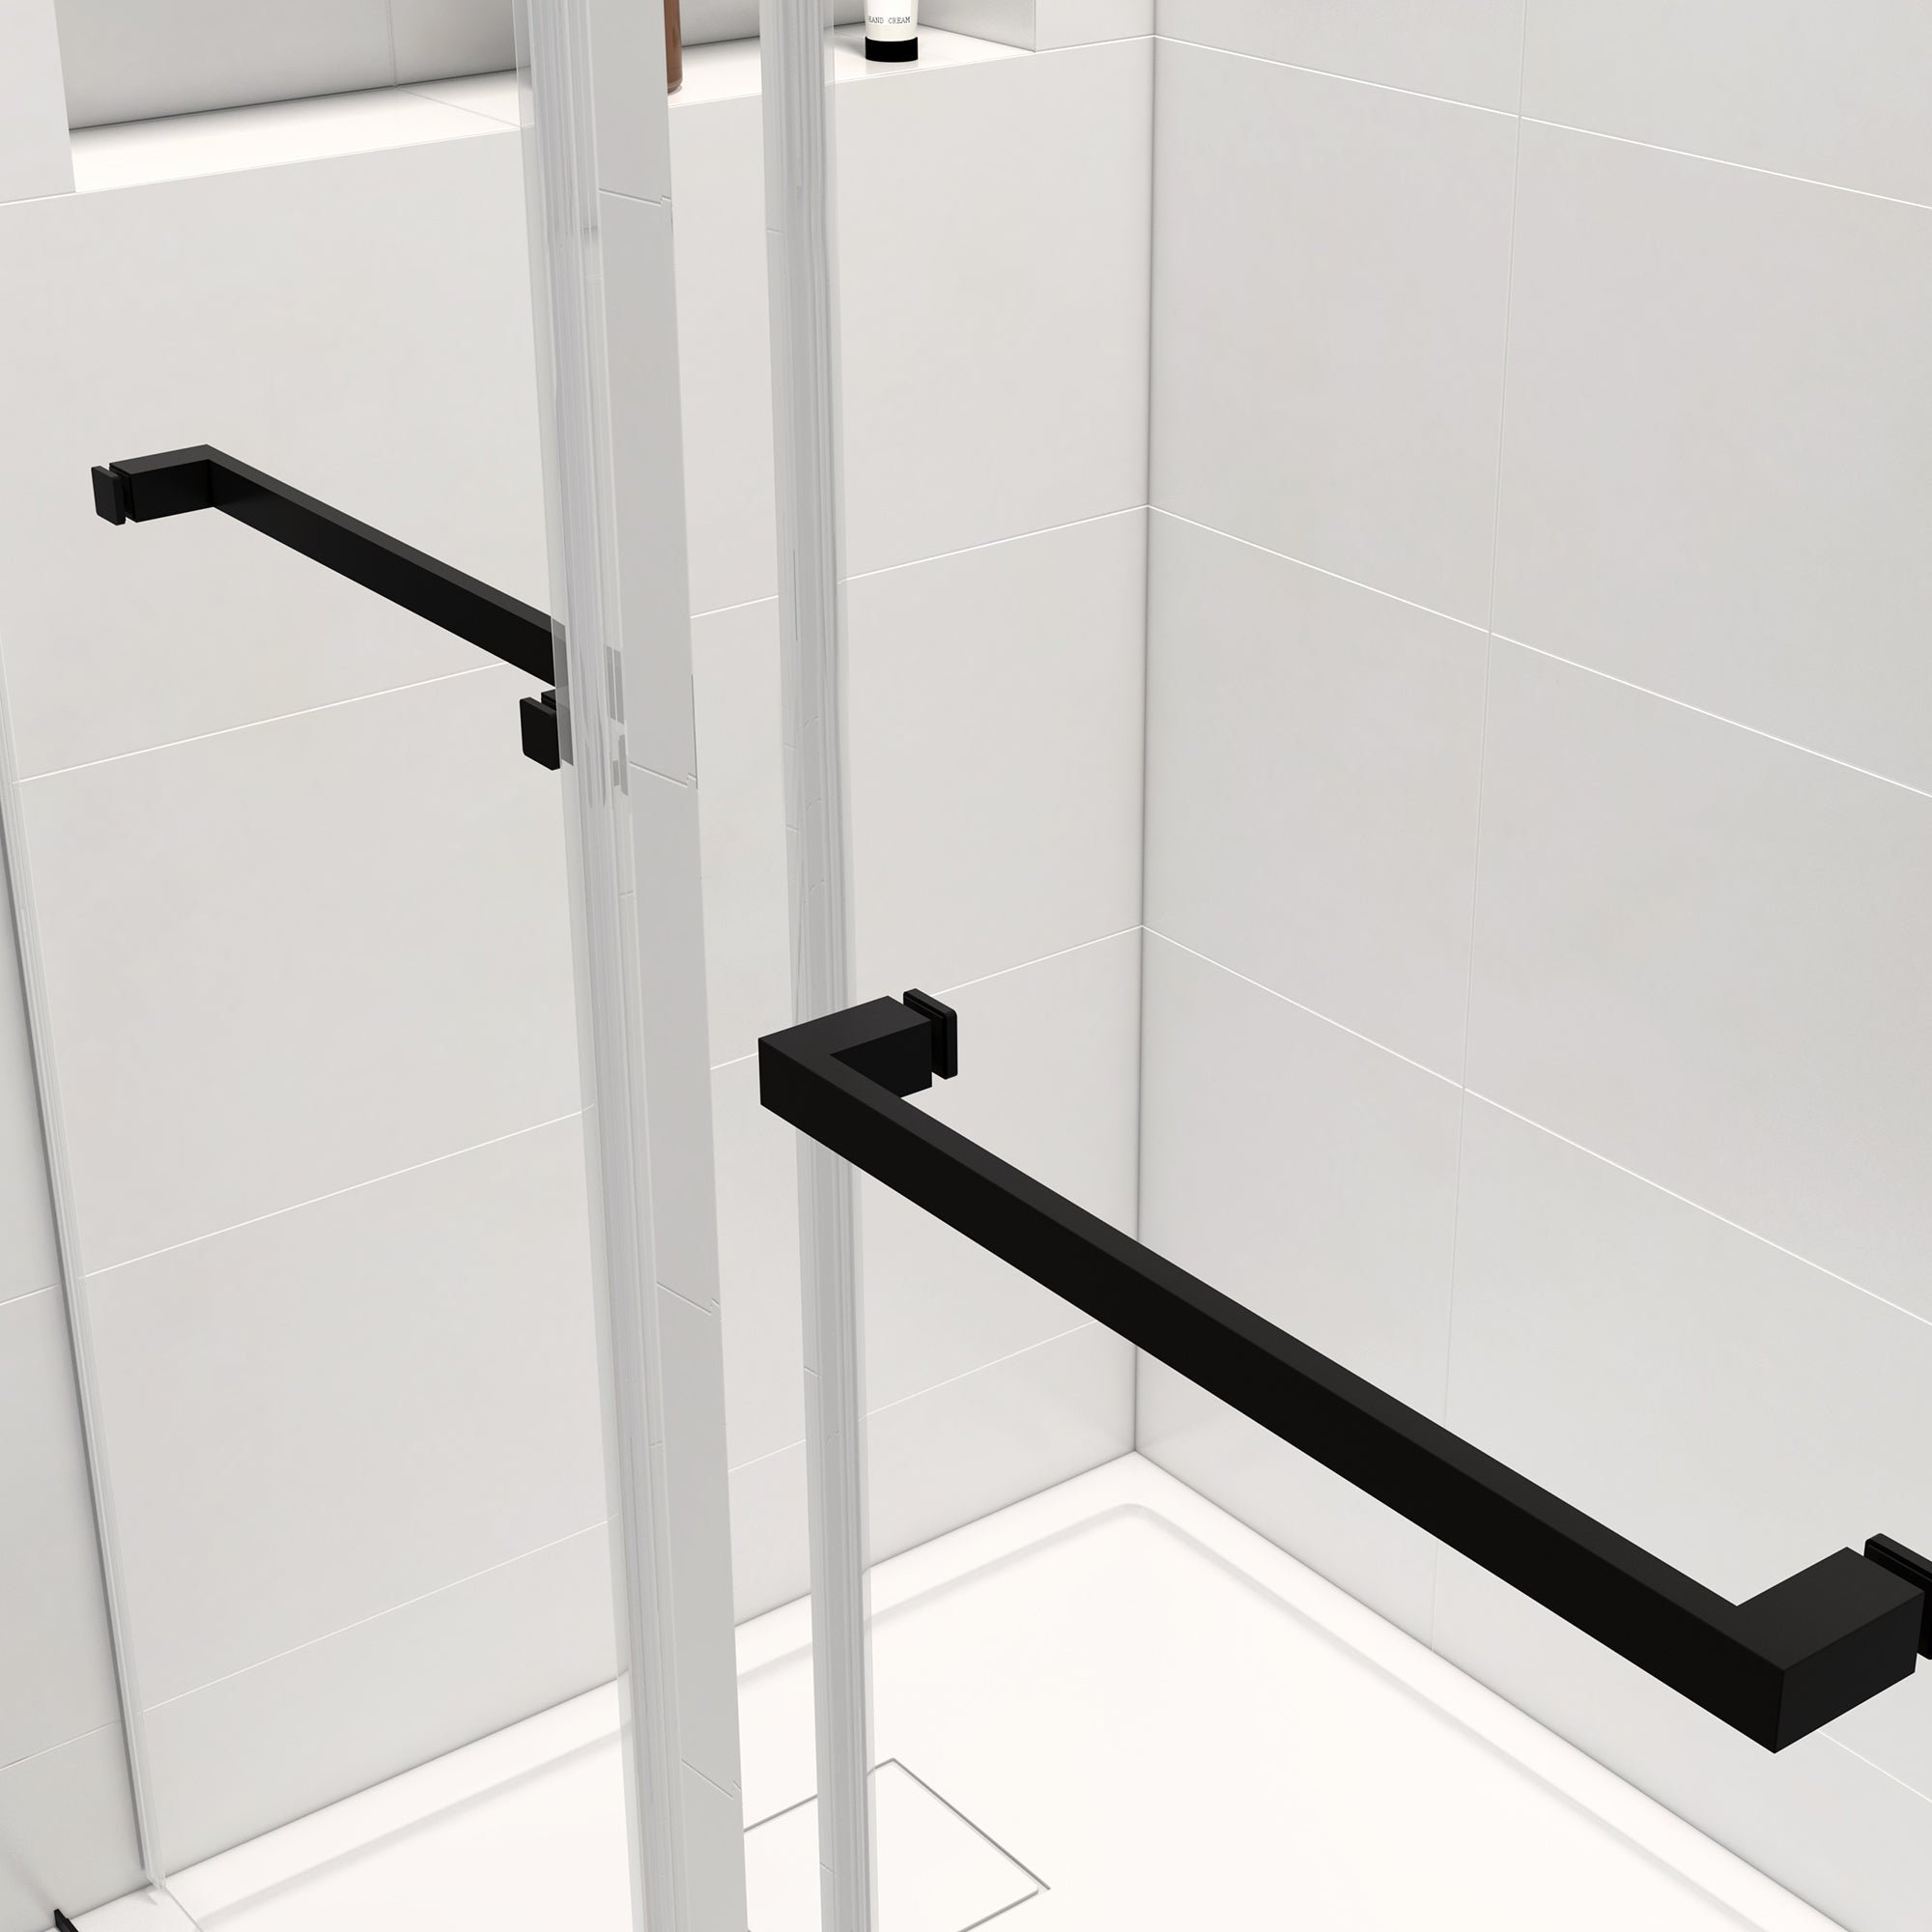 60*76" Double Sliding Frameless Shower Door Handrails matt black-bathroom-stainless steel